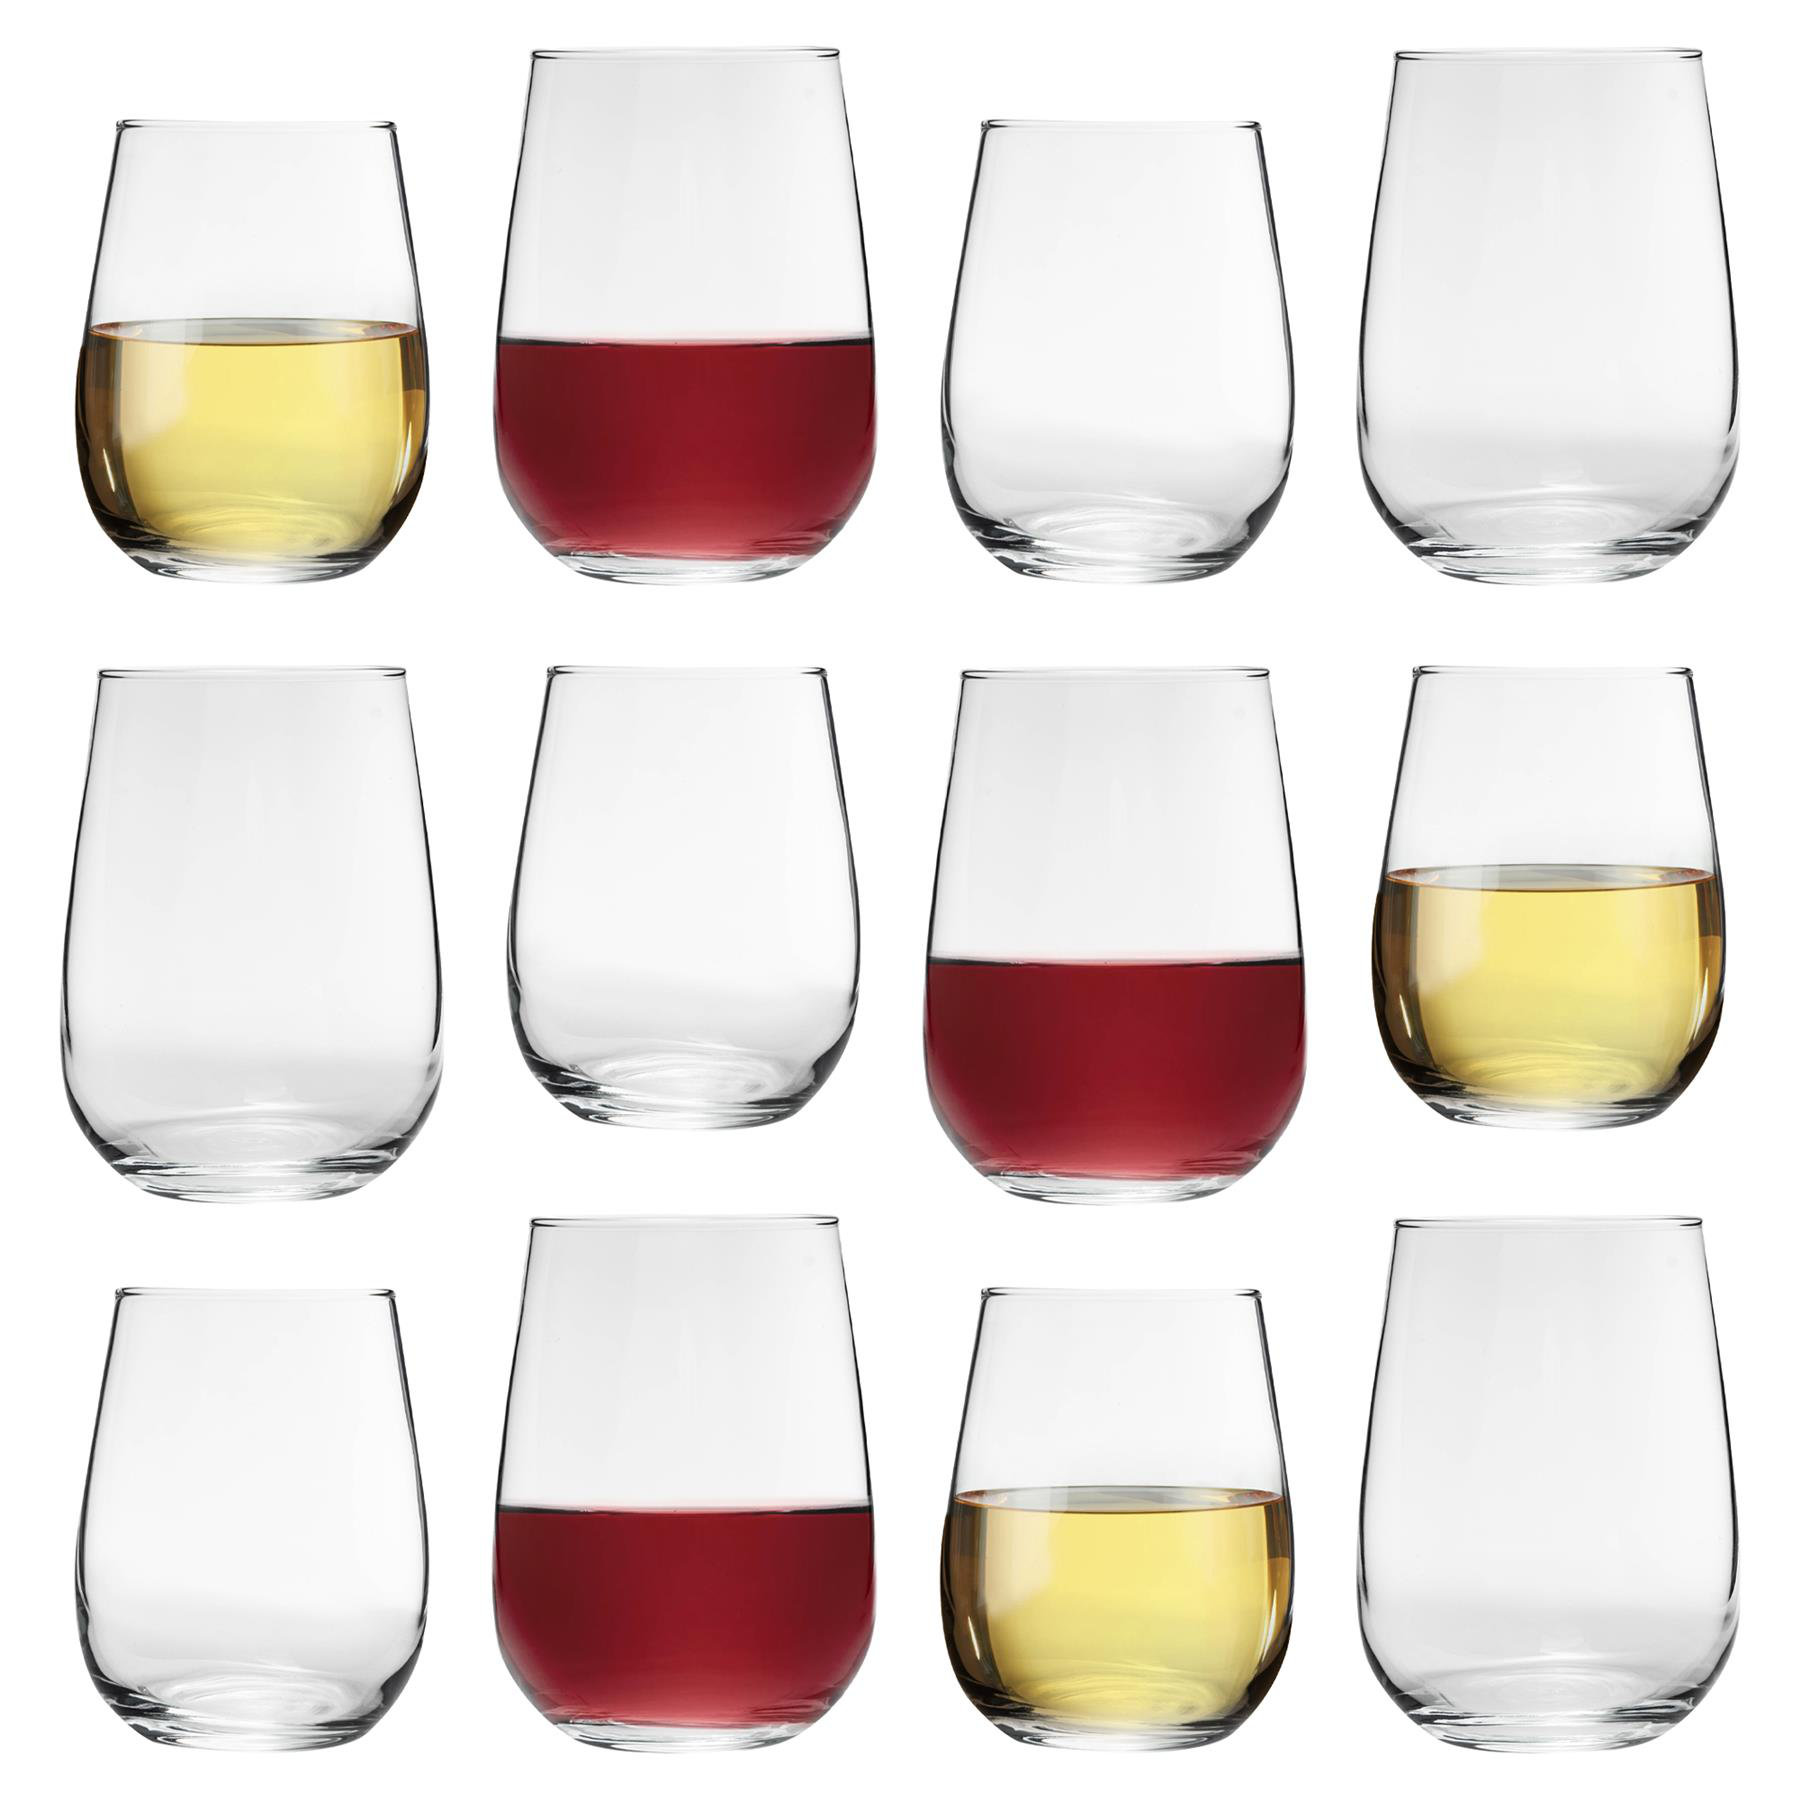 https://assets.wfcdn.com/im/21378840/compr-r85/2277/227728839/lav-12-piece-590ml-glass-stemless-wine-glass-assorted-stemware-set.jpg